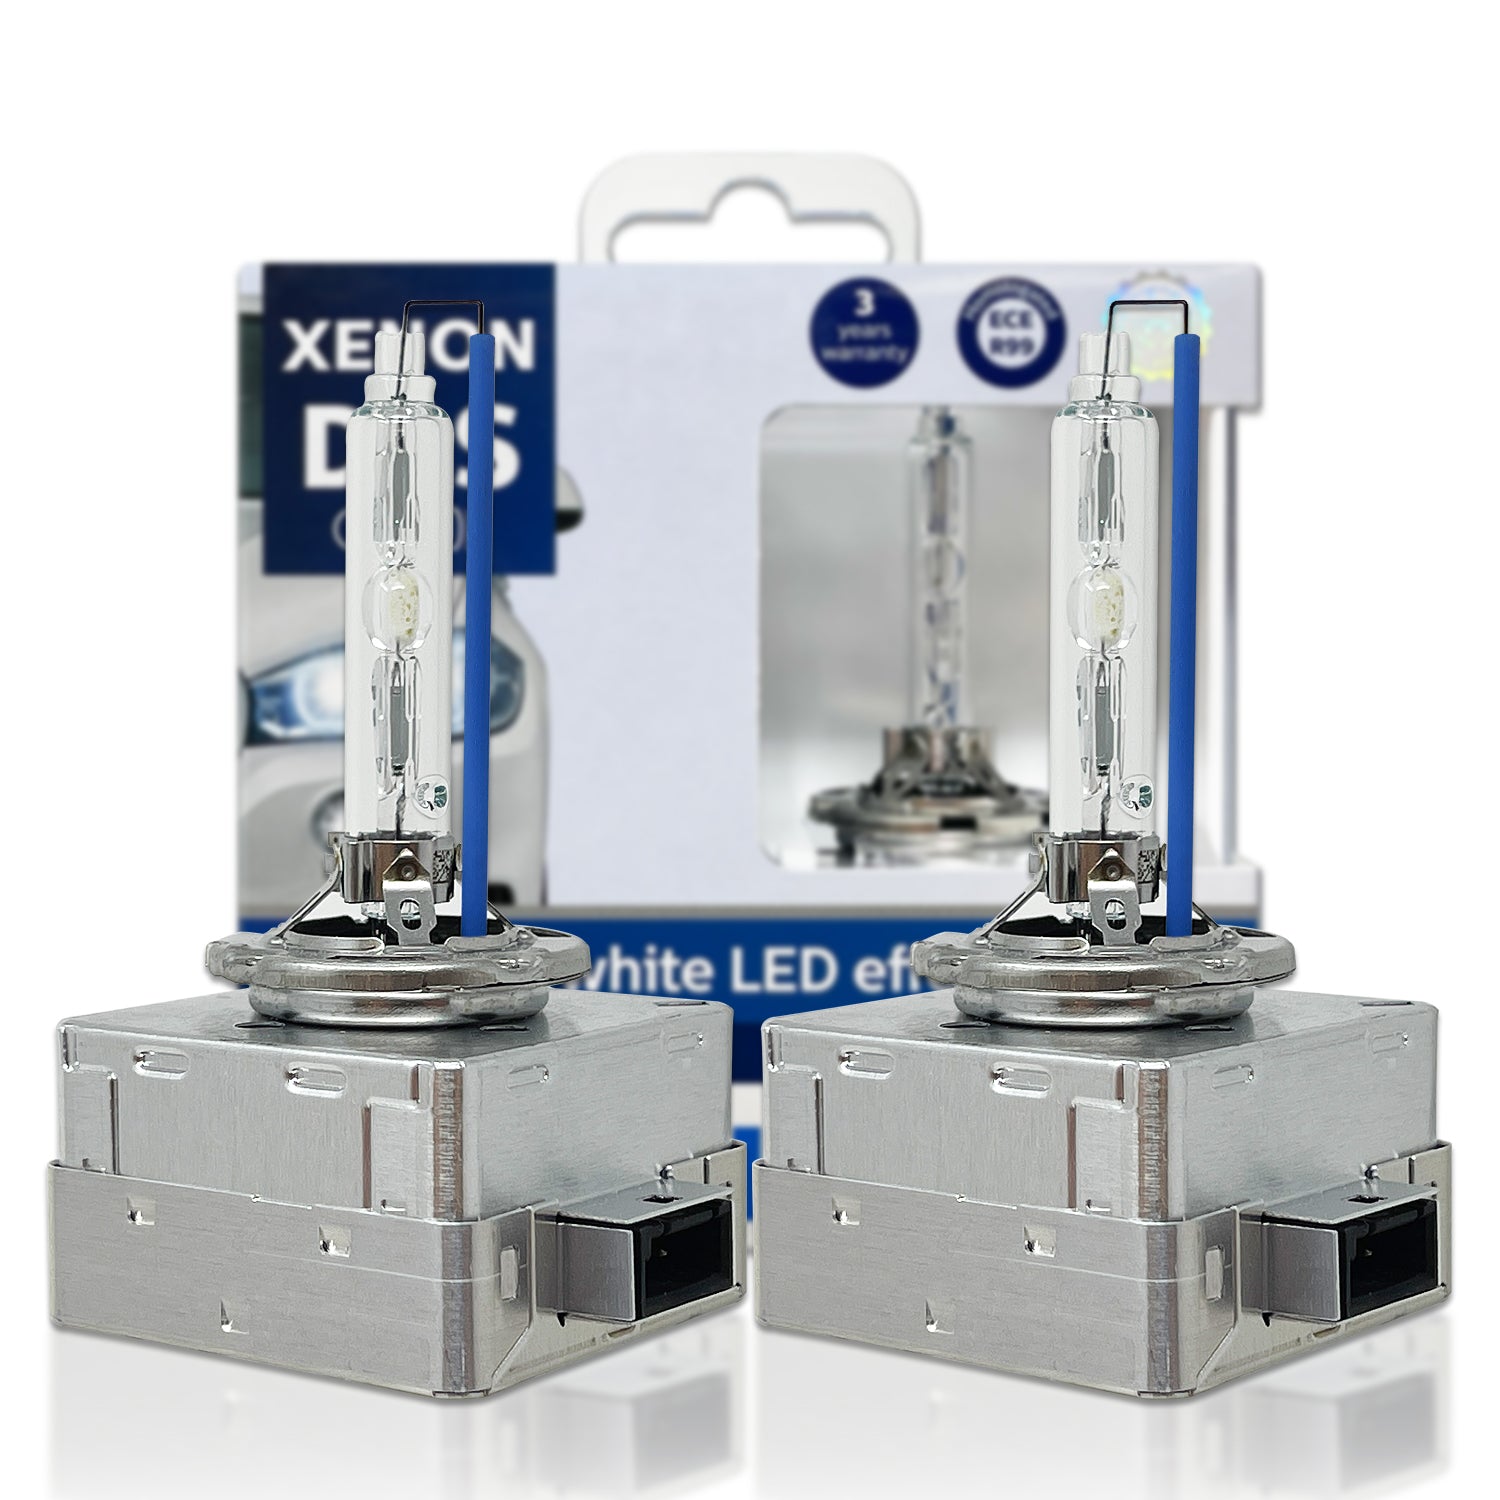 Xenon1tphilips D3s 35w Xenon Hid Headlight Bulb 4200k Ece-certified